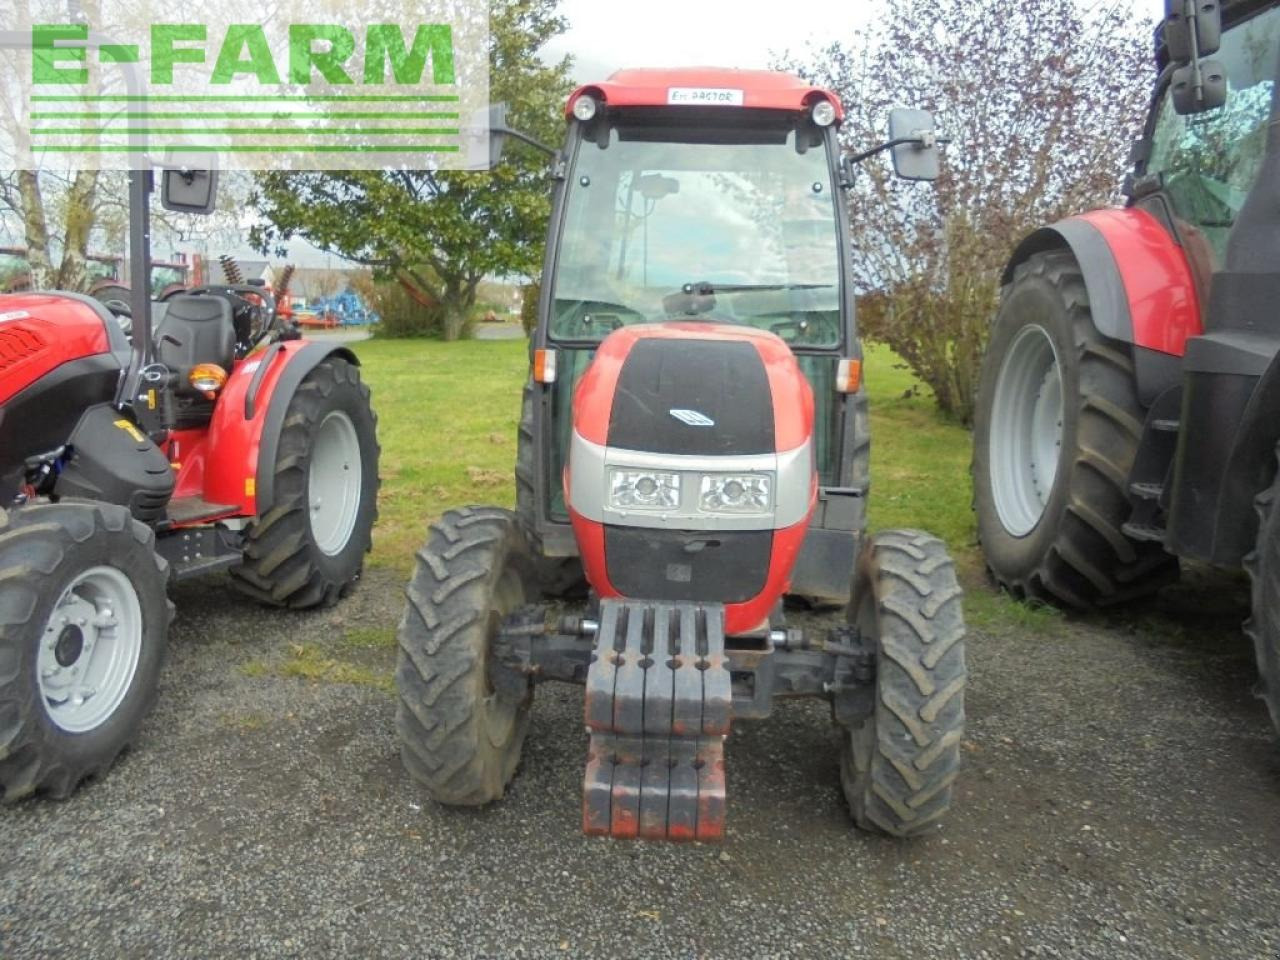 Farm tractor McCormick f90: picture 3